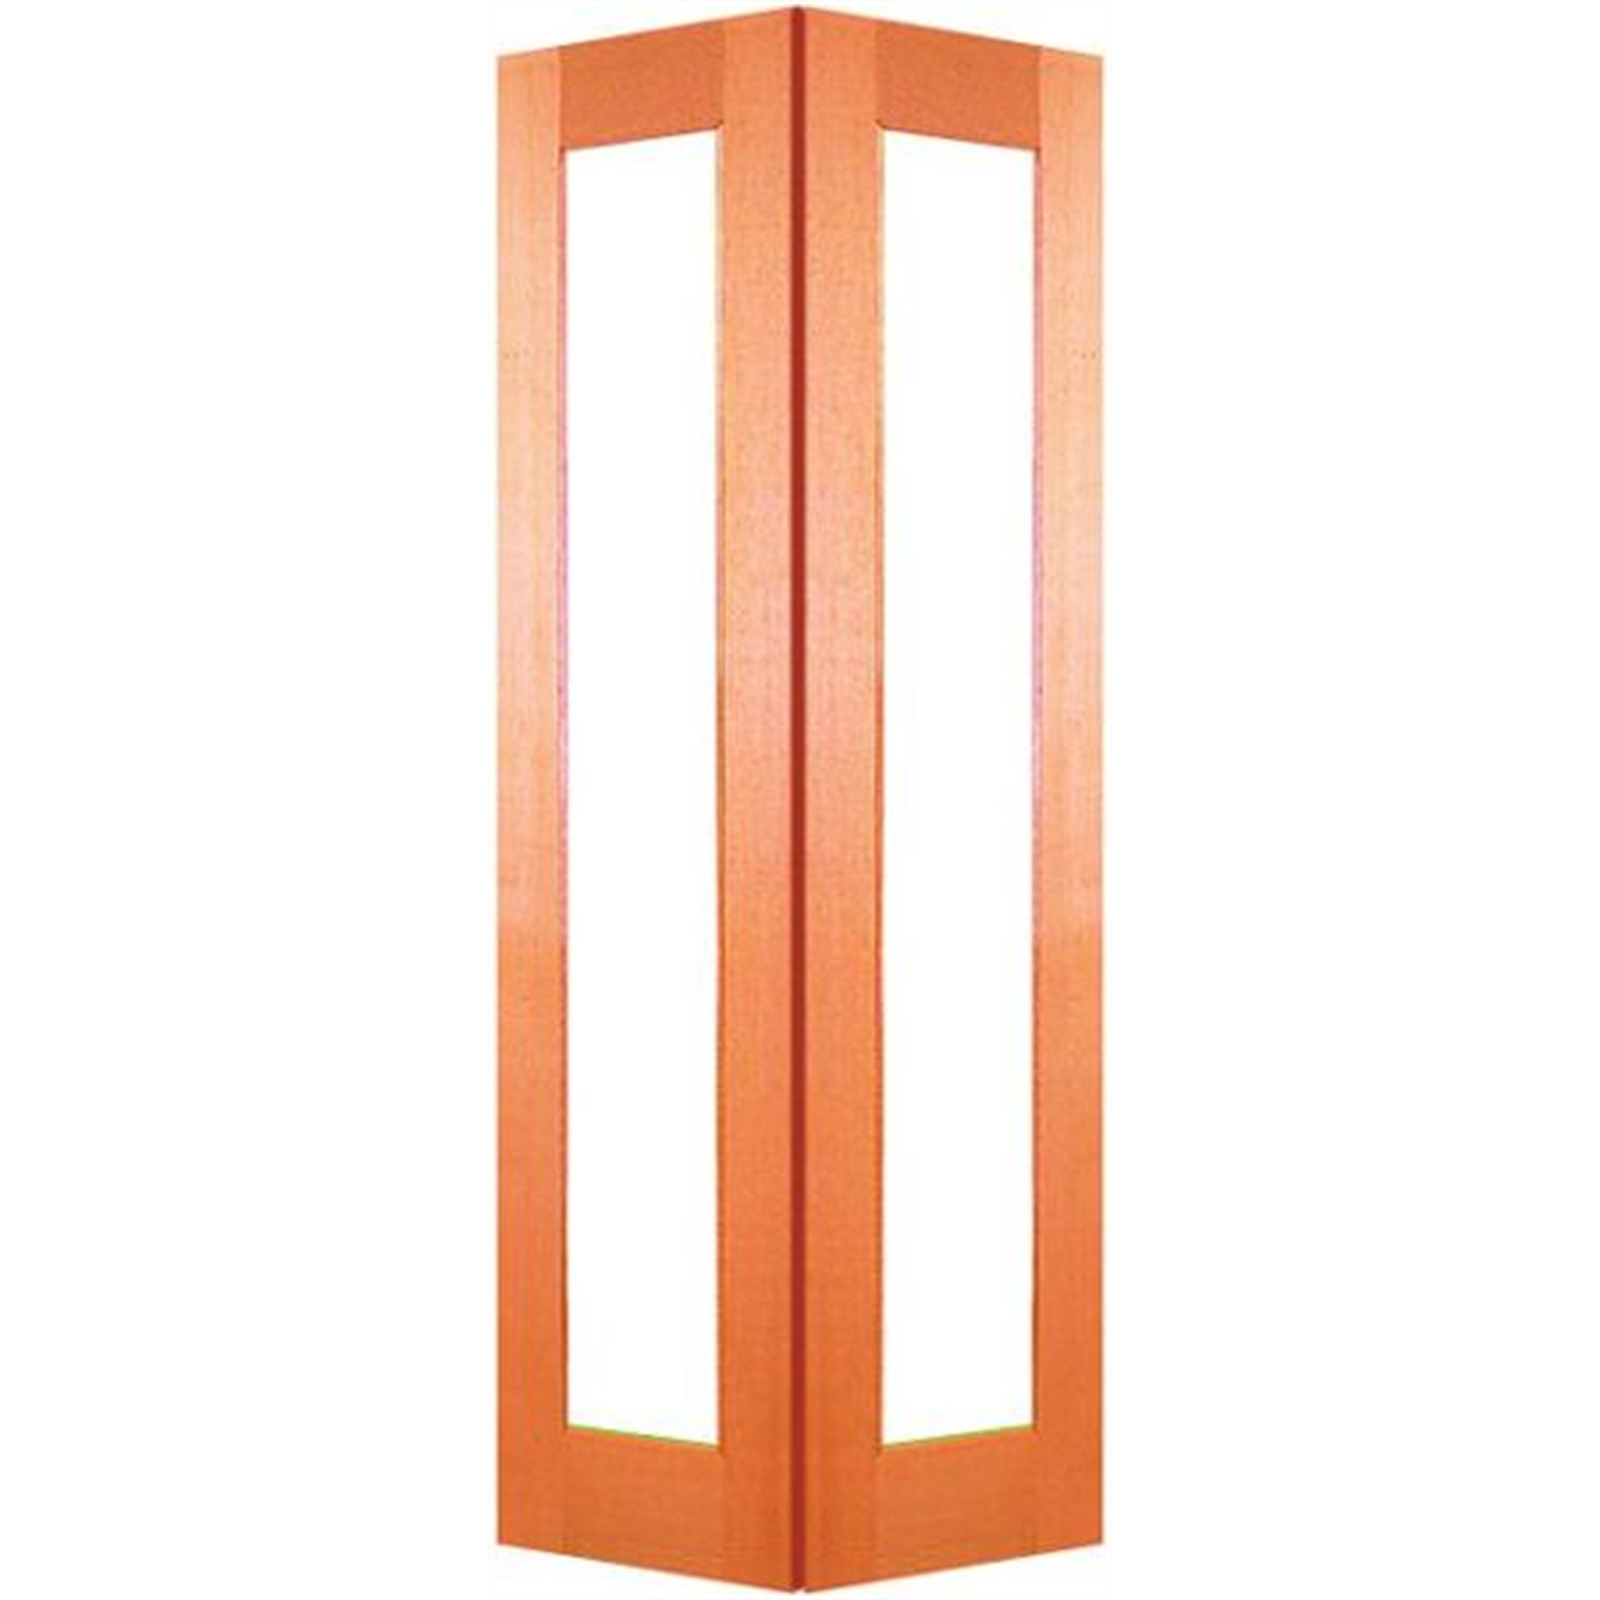 Woodcraft Doors 2040 x 820 x 35mm 1 Lite Clear Safety Glass Internal Bi-Fold Door